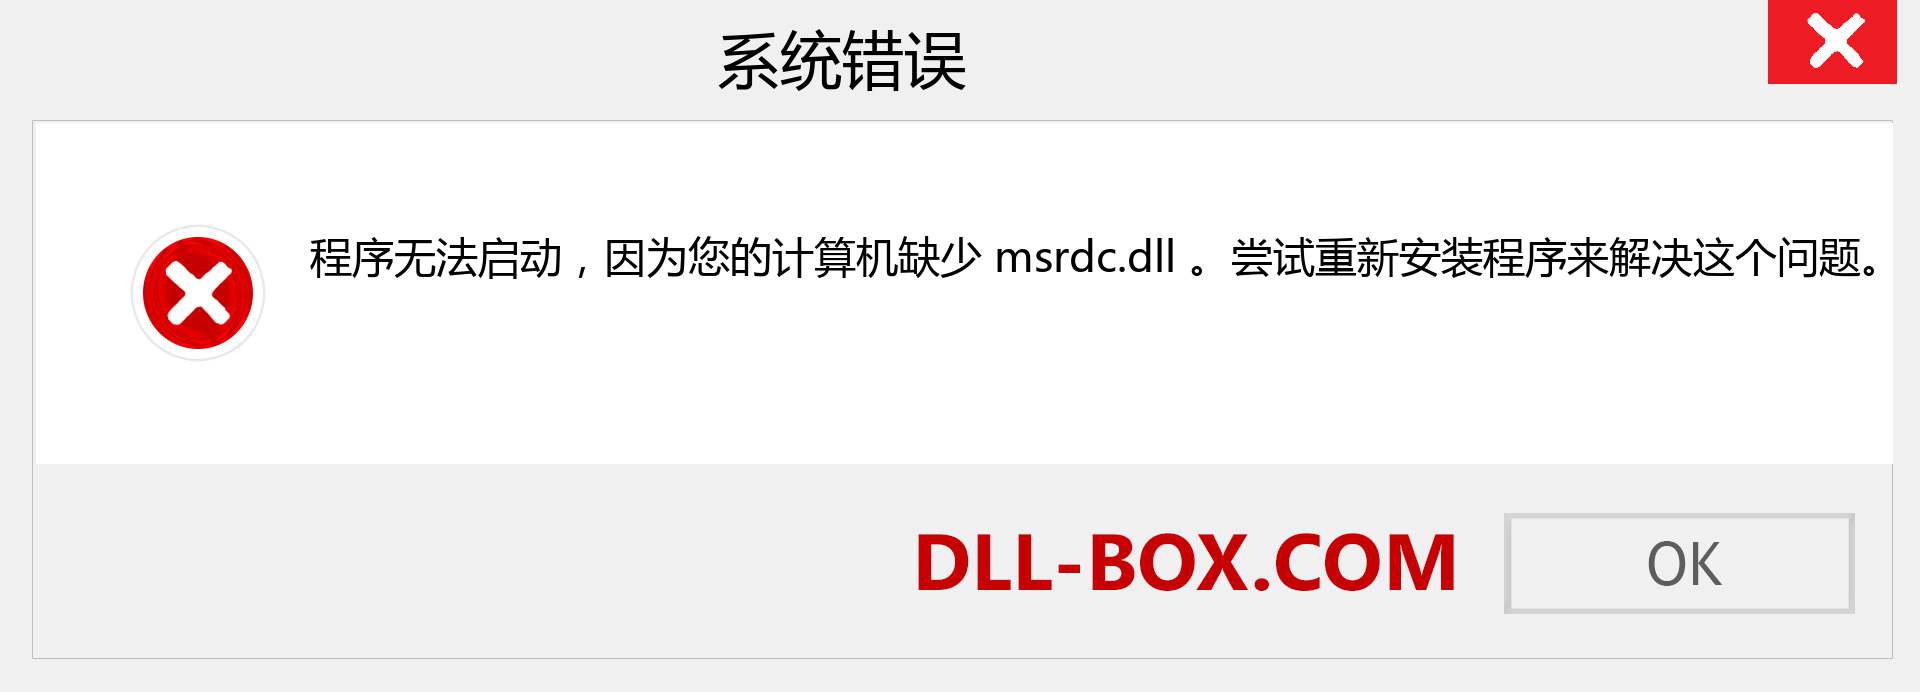 msrdc.dll 文件丢失？。 适用于 Windows 7、8、10 的下载 - 修复 Windows、照片、图像上的 msrdc dll 丢失错误